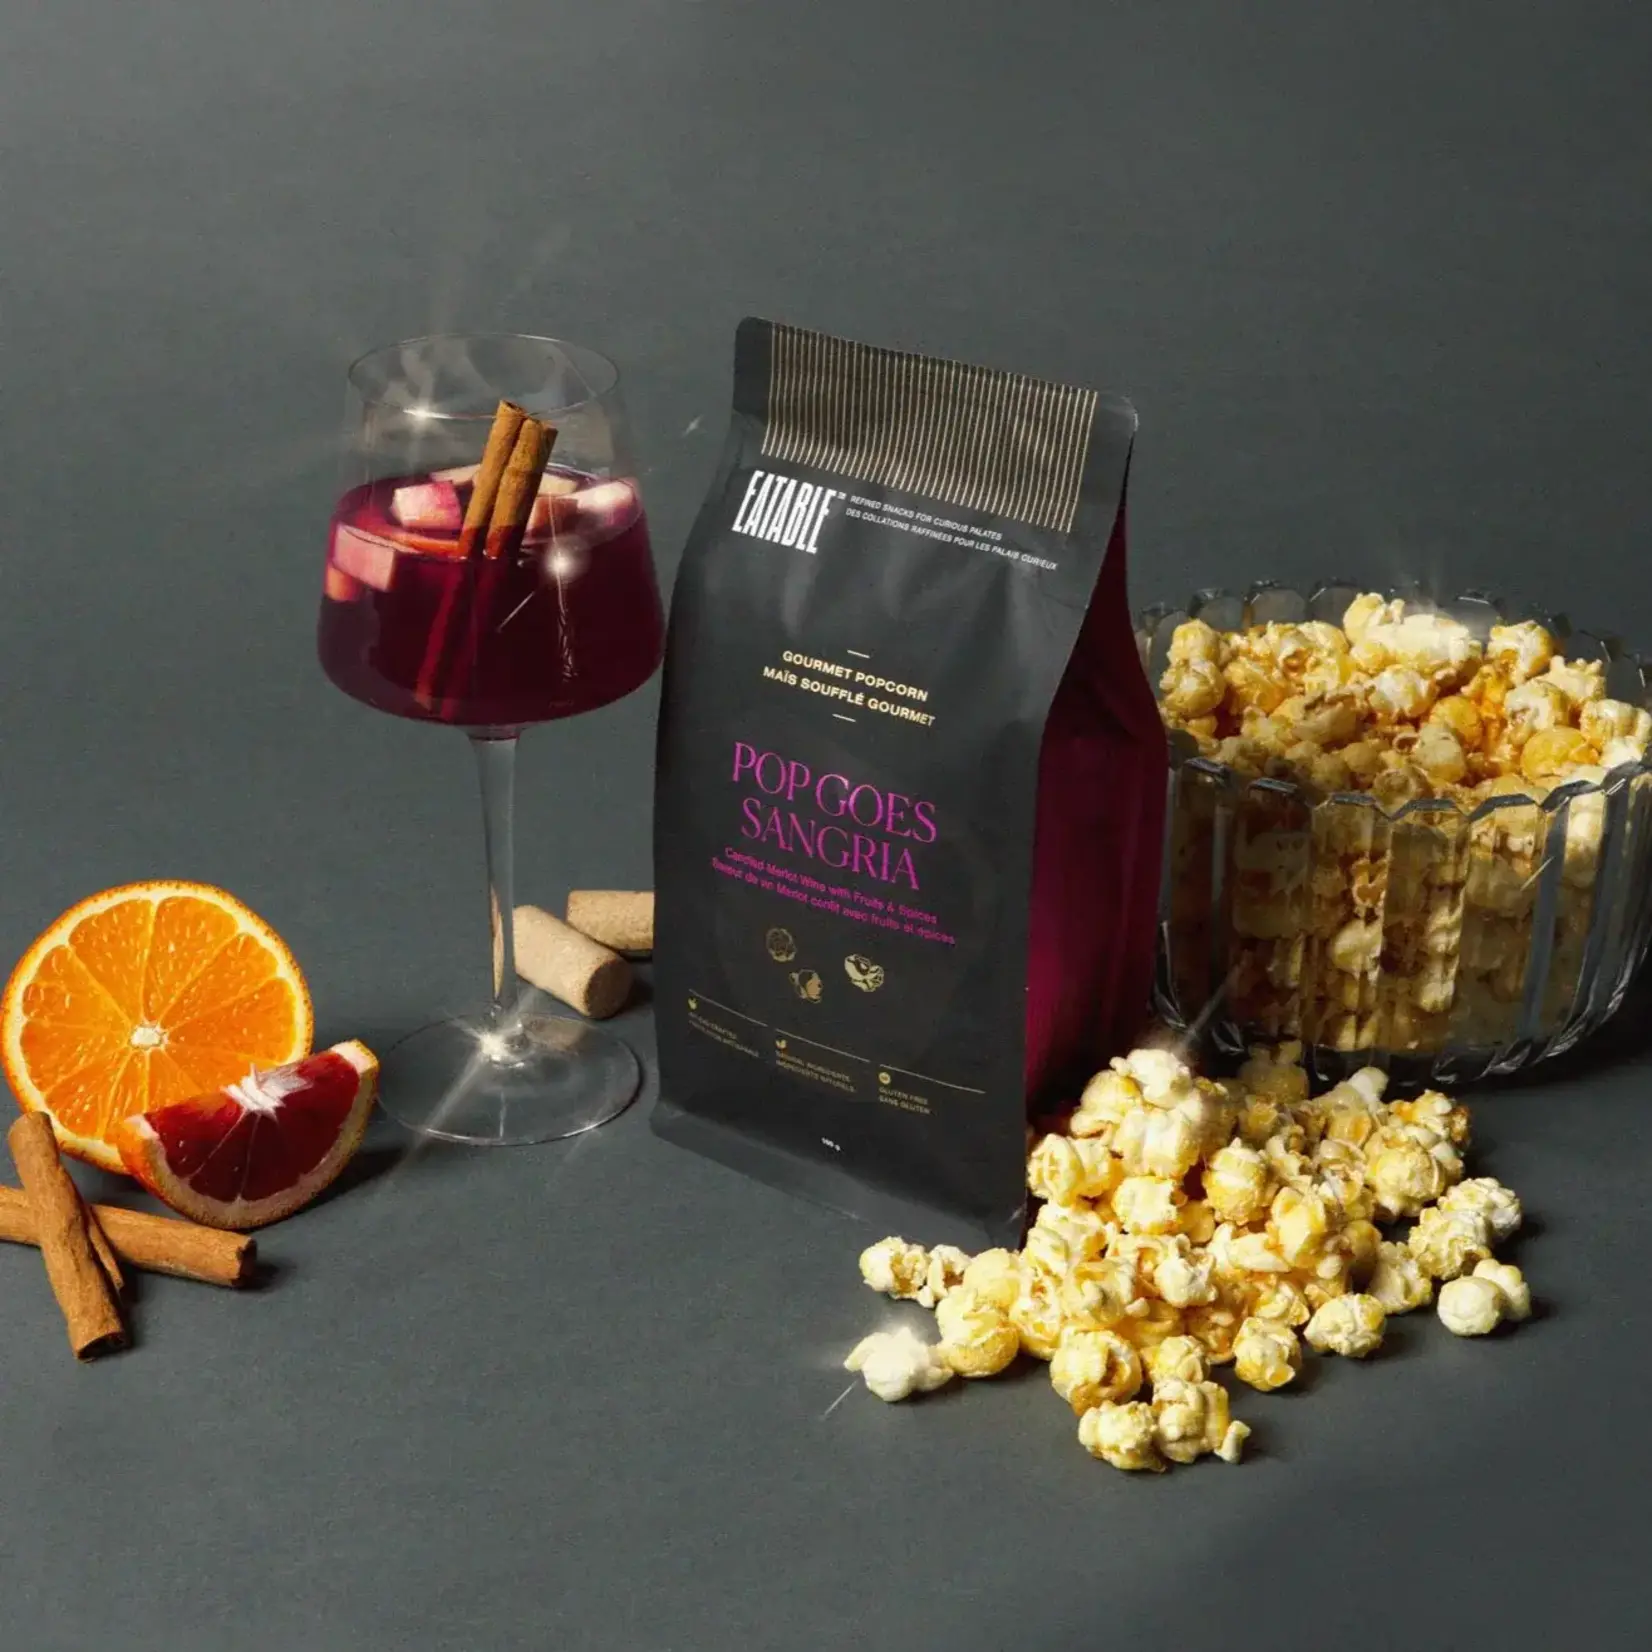 Eatable Popcorn - Pop Goes Sangria